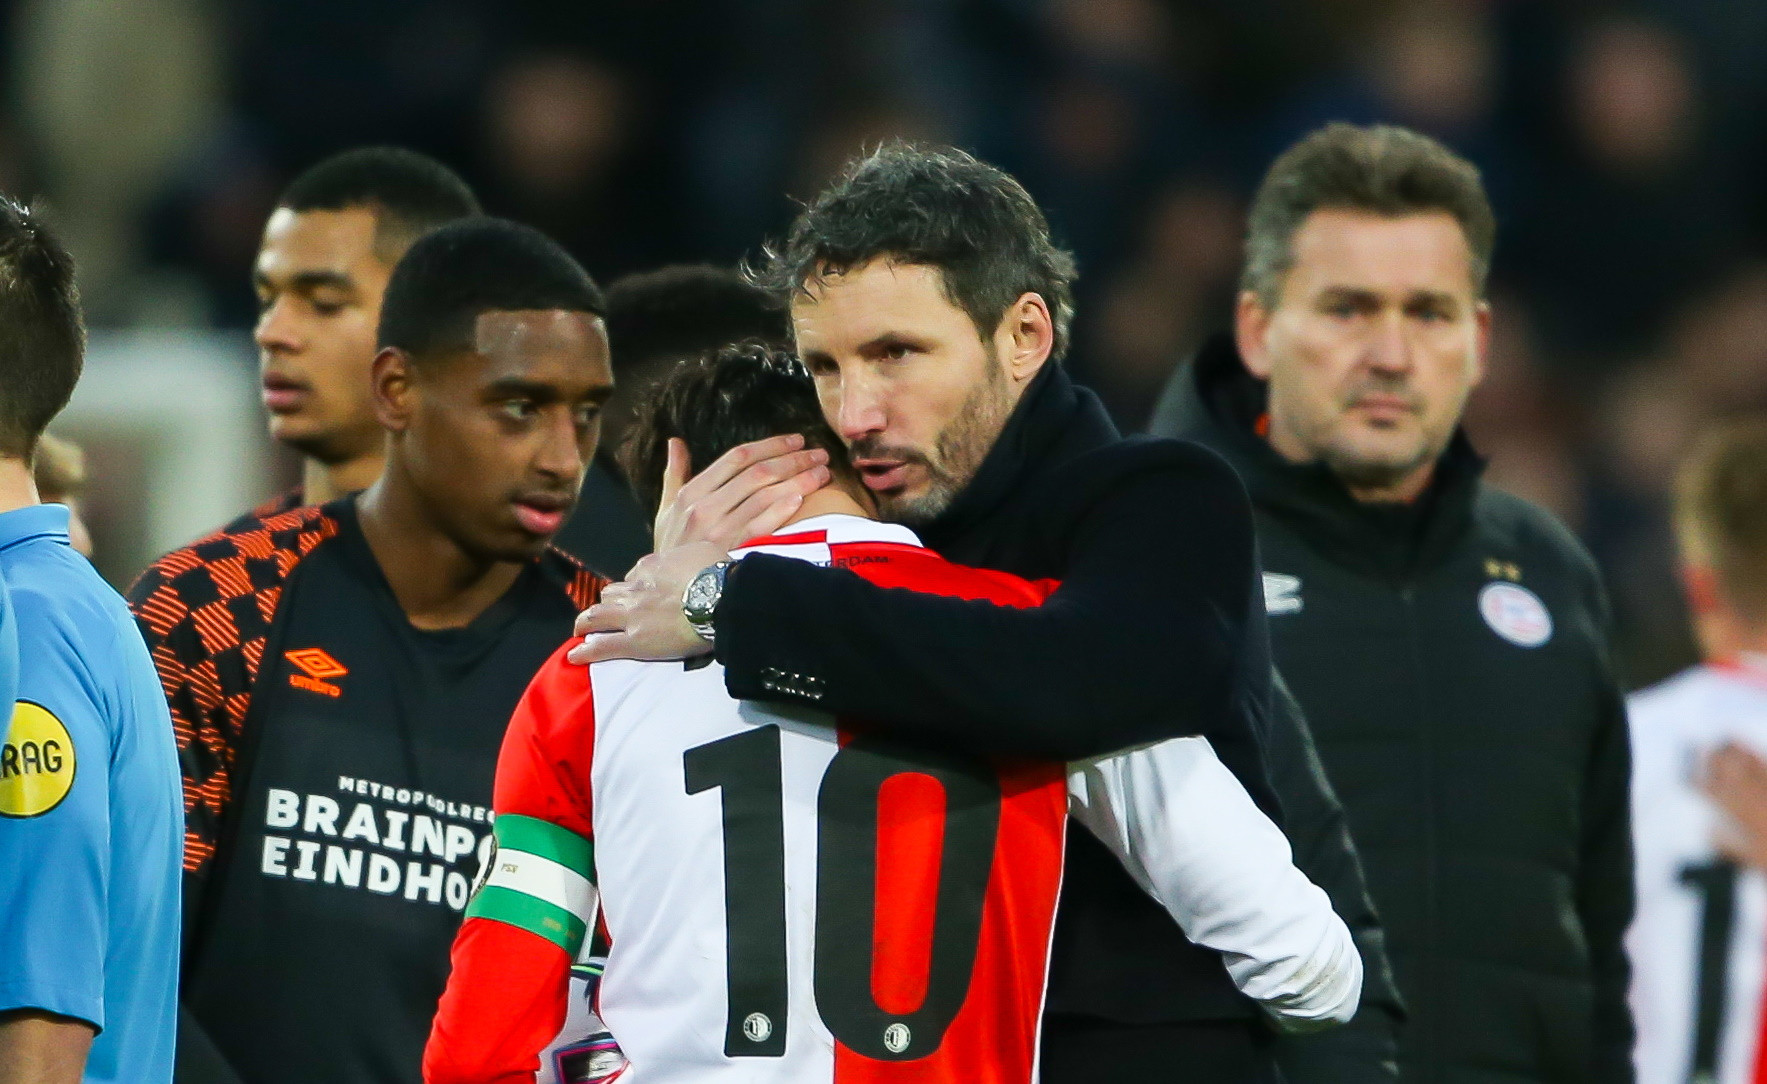 "Van Bommels manier van spelen en karakter hoort bij Feyenoord"